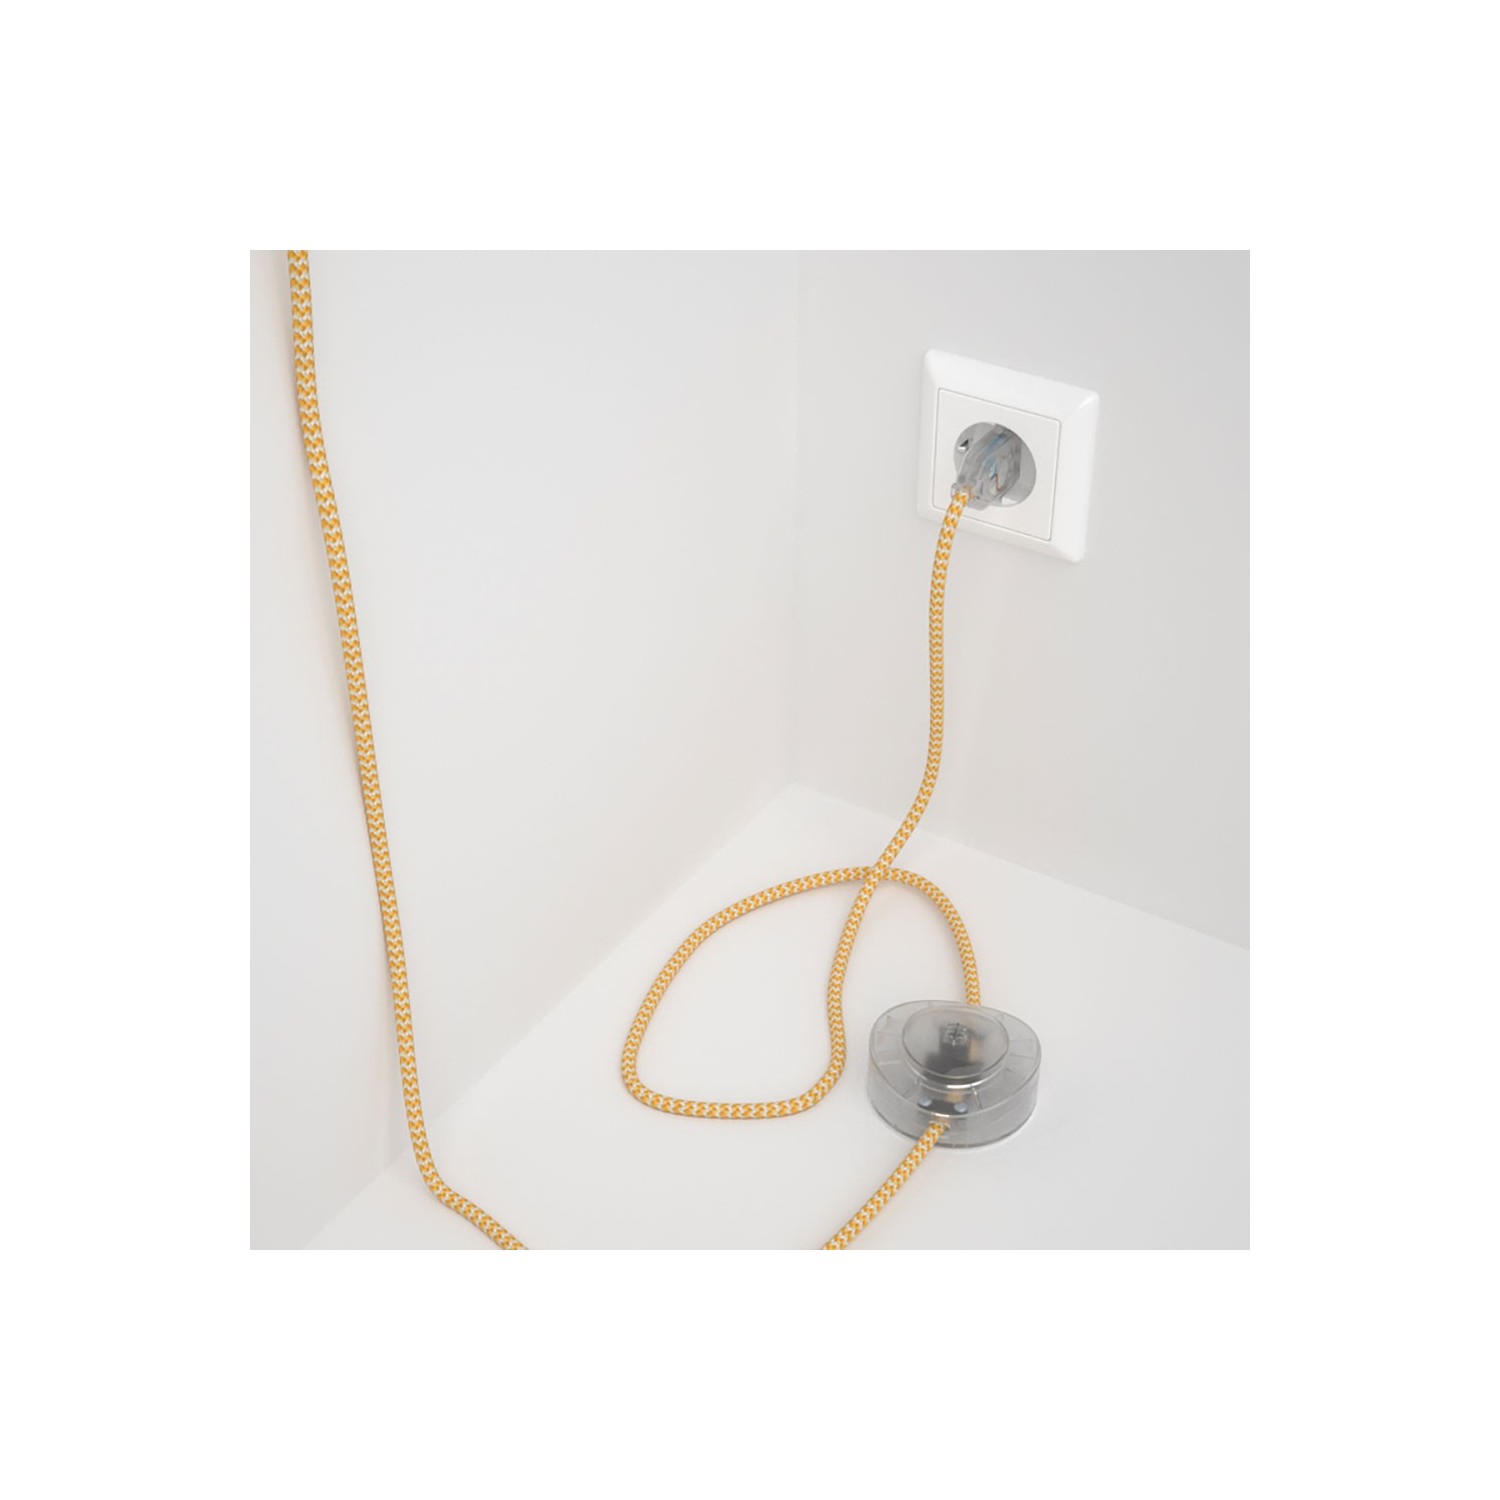 Strijkijzersnoer set RZ10 geel zigzag viscose 3 m. voor staande lamp met stekker en voetschakelaar.